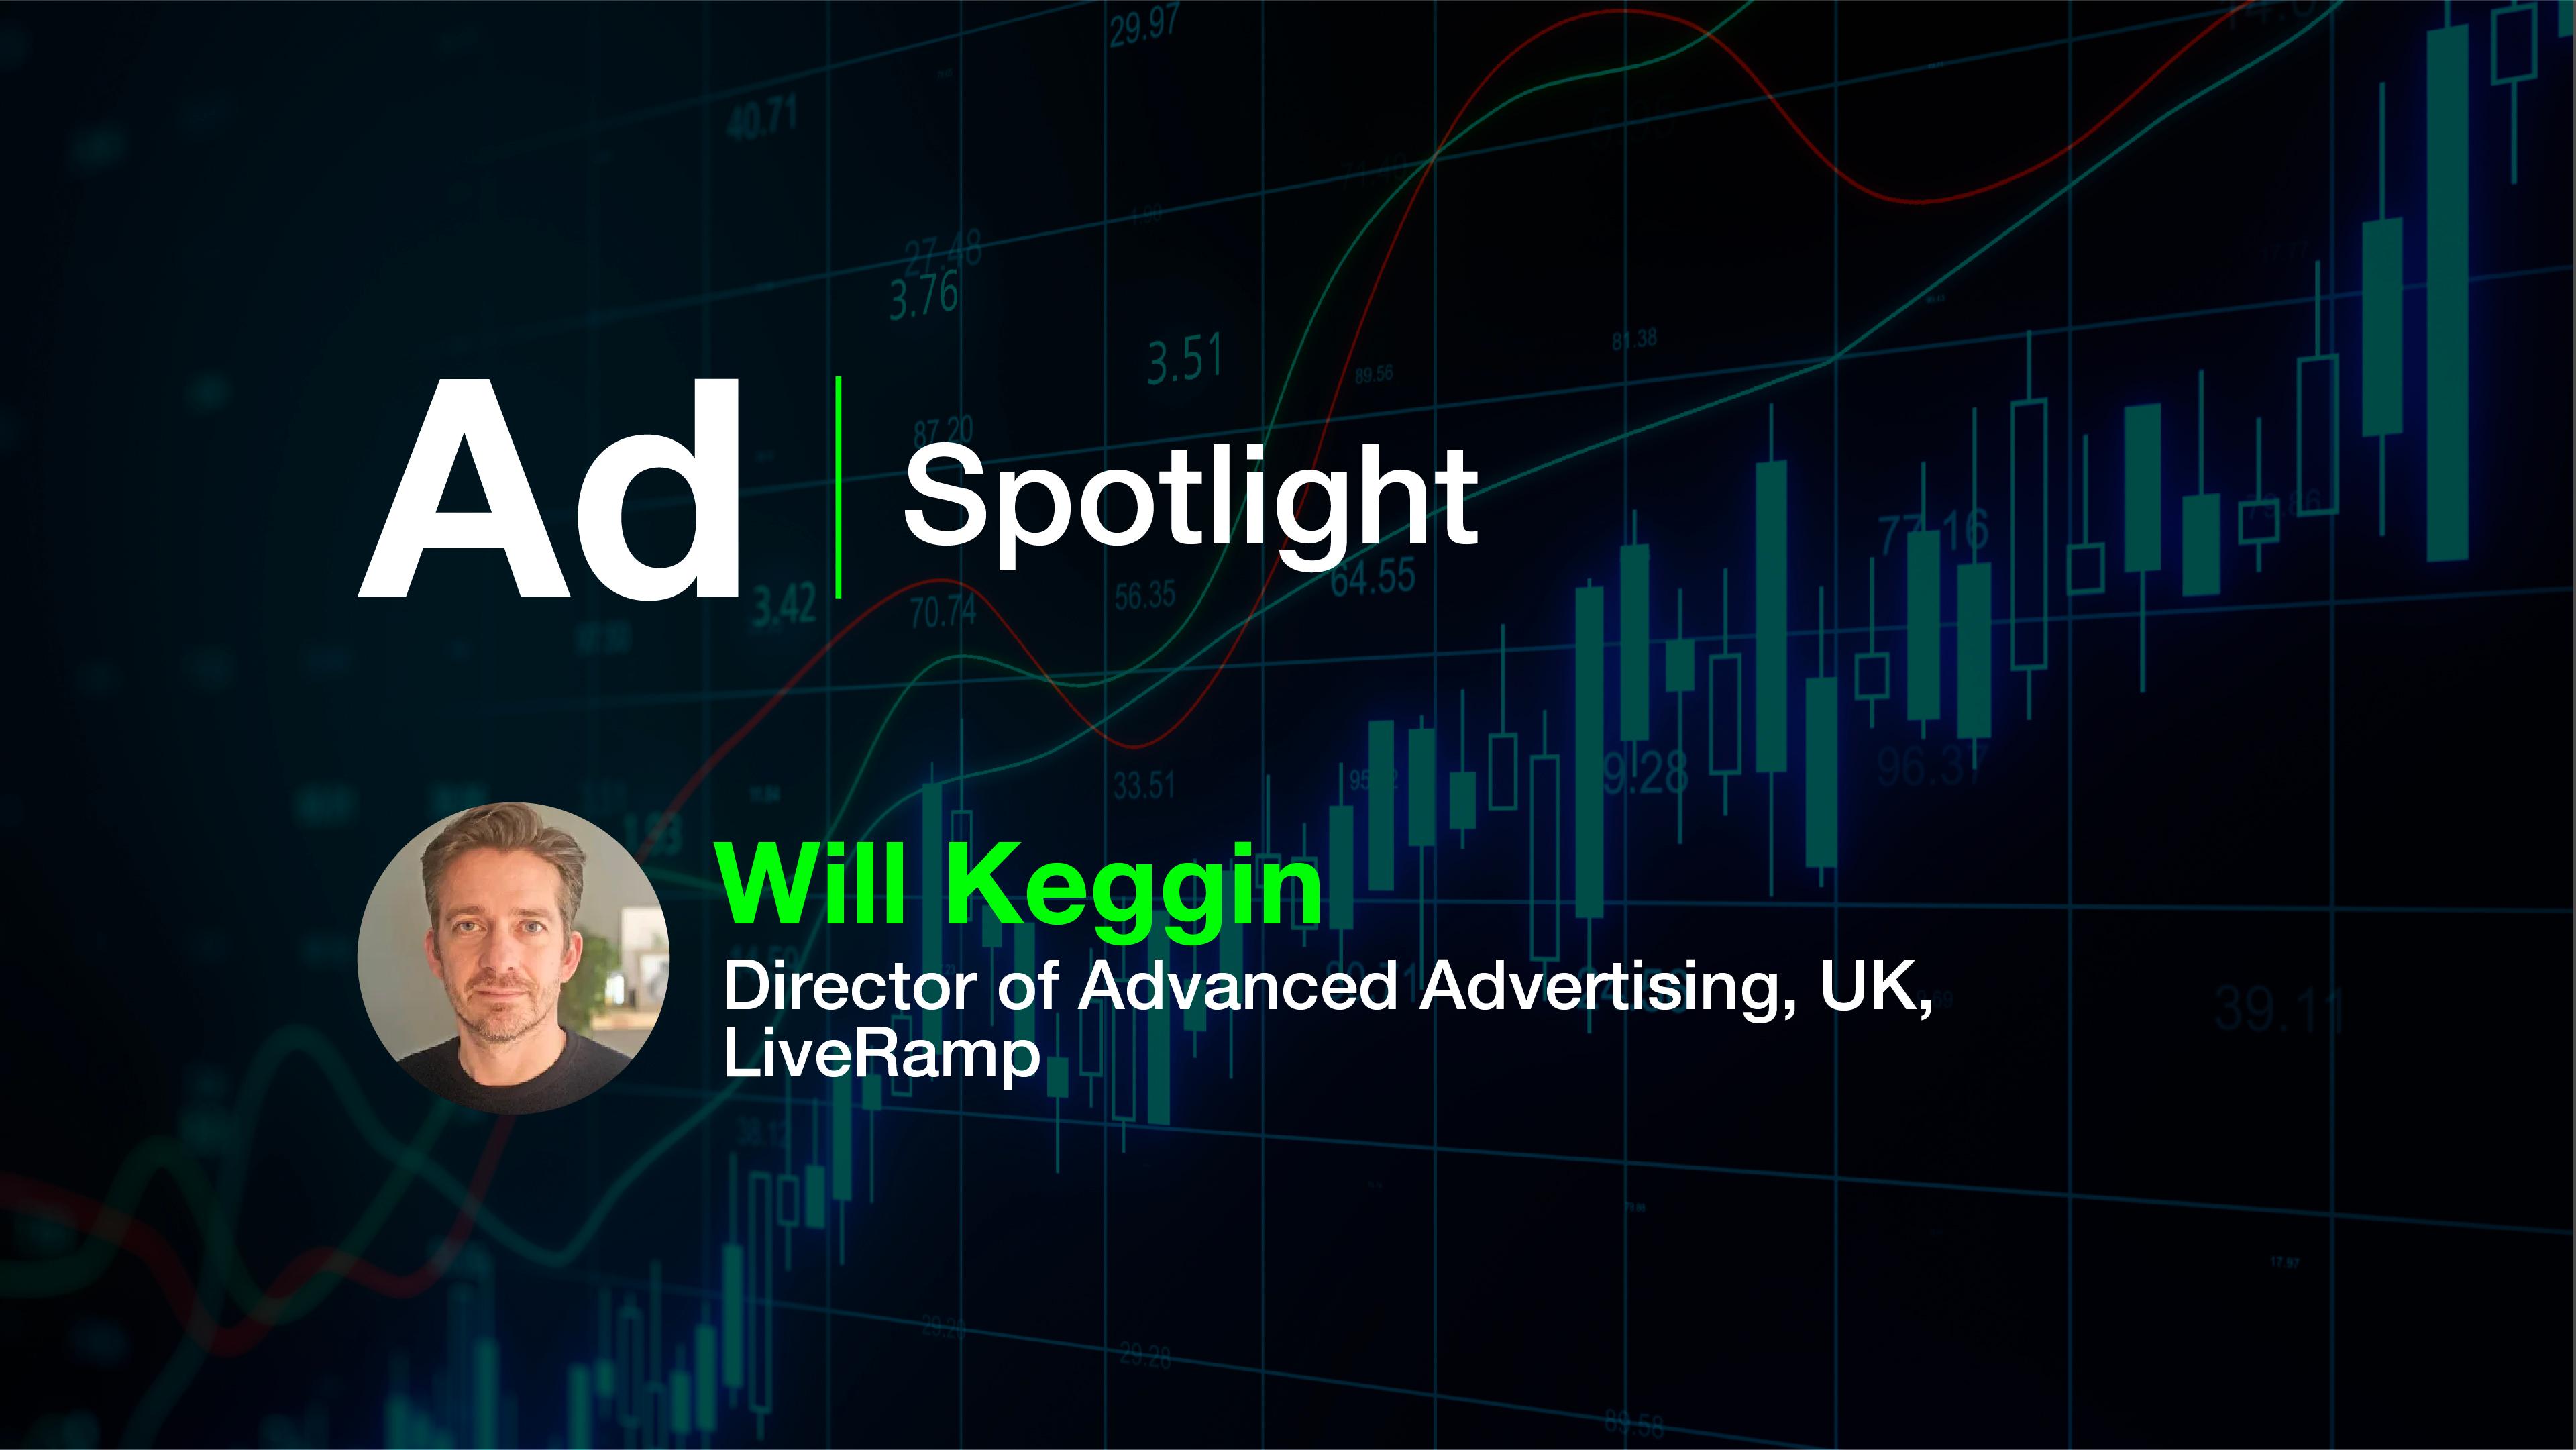 Ad Spotlight: Will Keggin, Director of Advanced Advertising, UK, LiveRamp